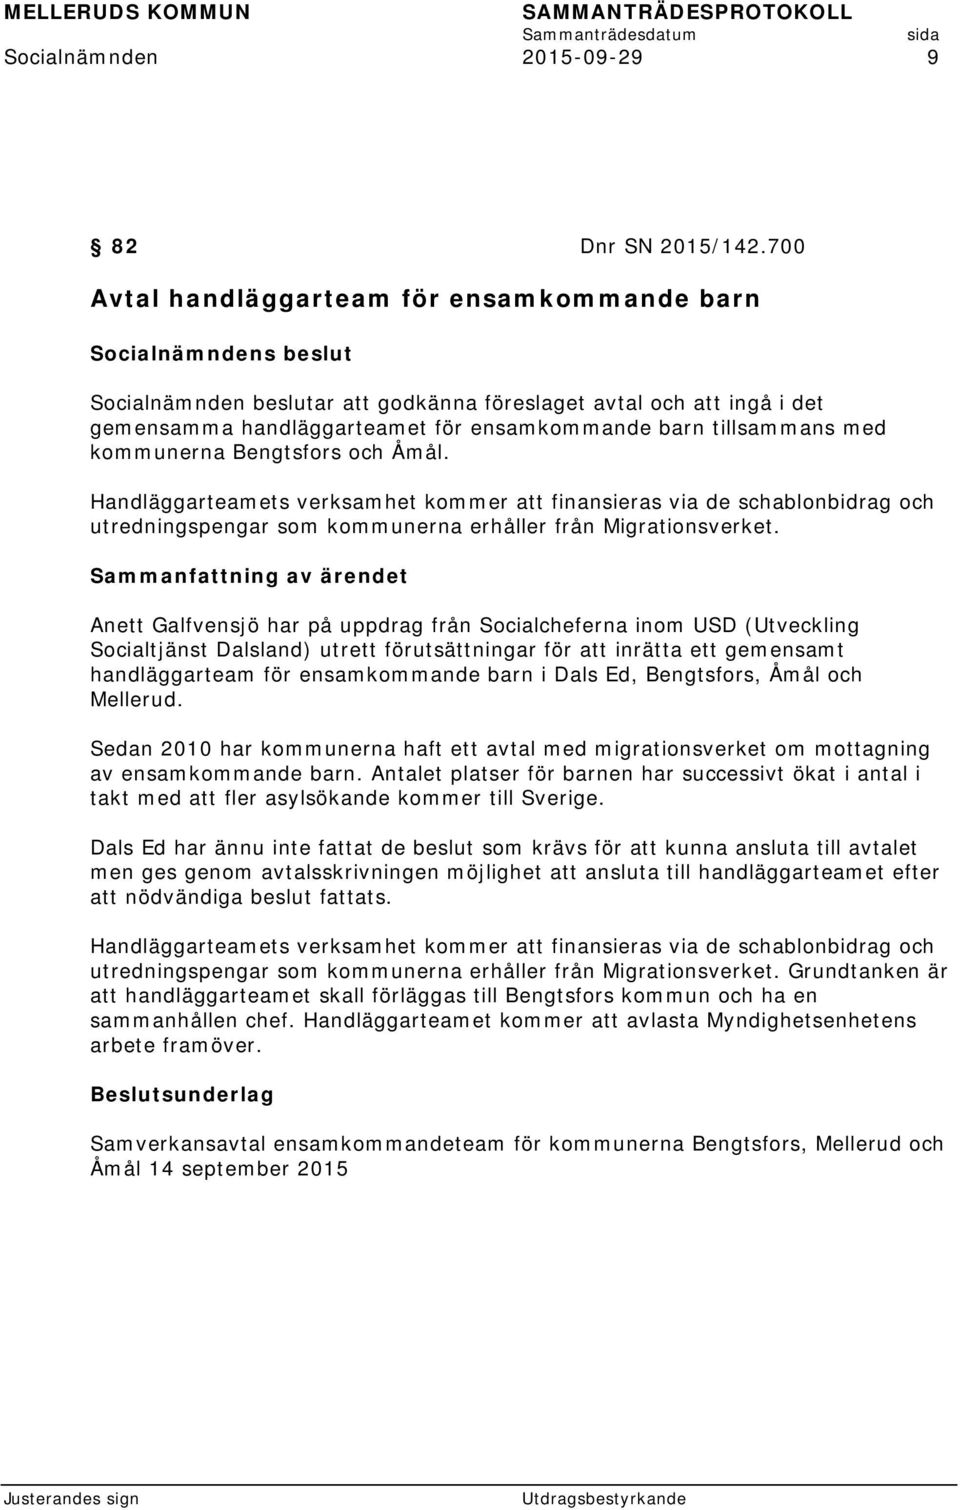 Bengtsfors och Åmål. Handläggarteamets verksamhet kommer att finansieras via de schablonbidrag och utredningspengar som kommunerna erhåller från Migrationsverket.